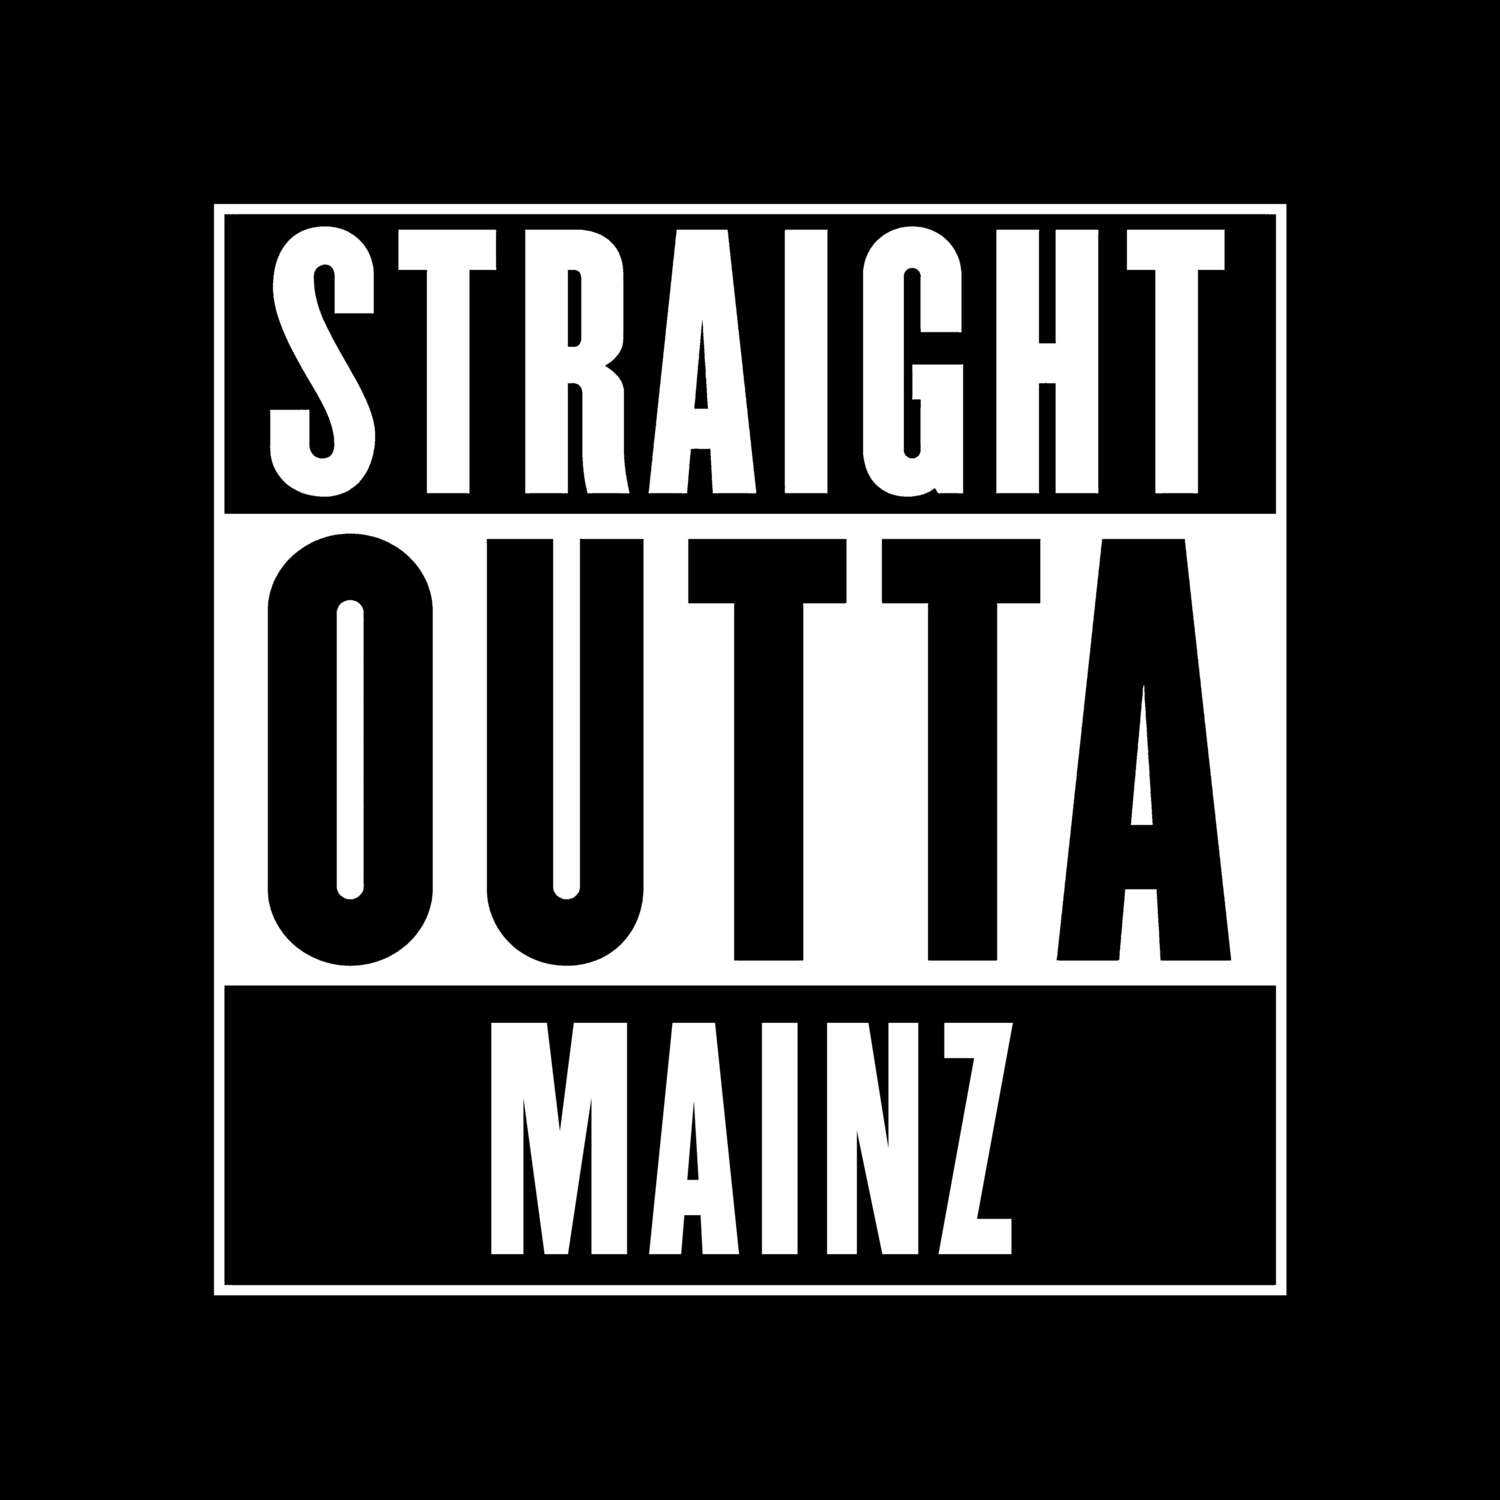 Mainz T-Shirt »Straight Outta«